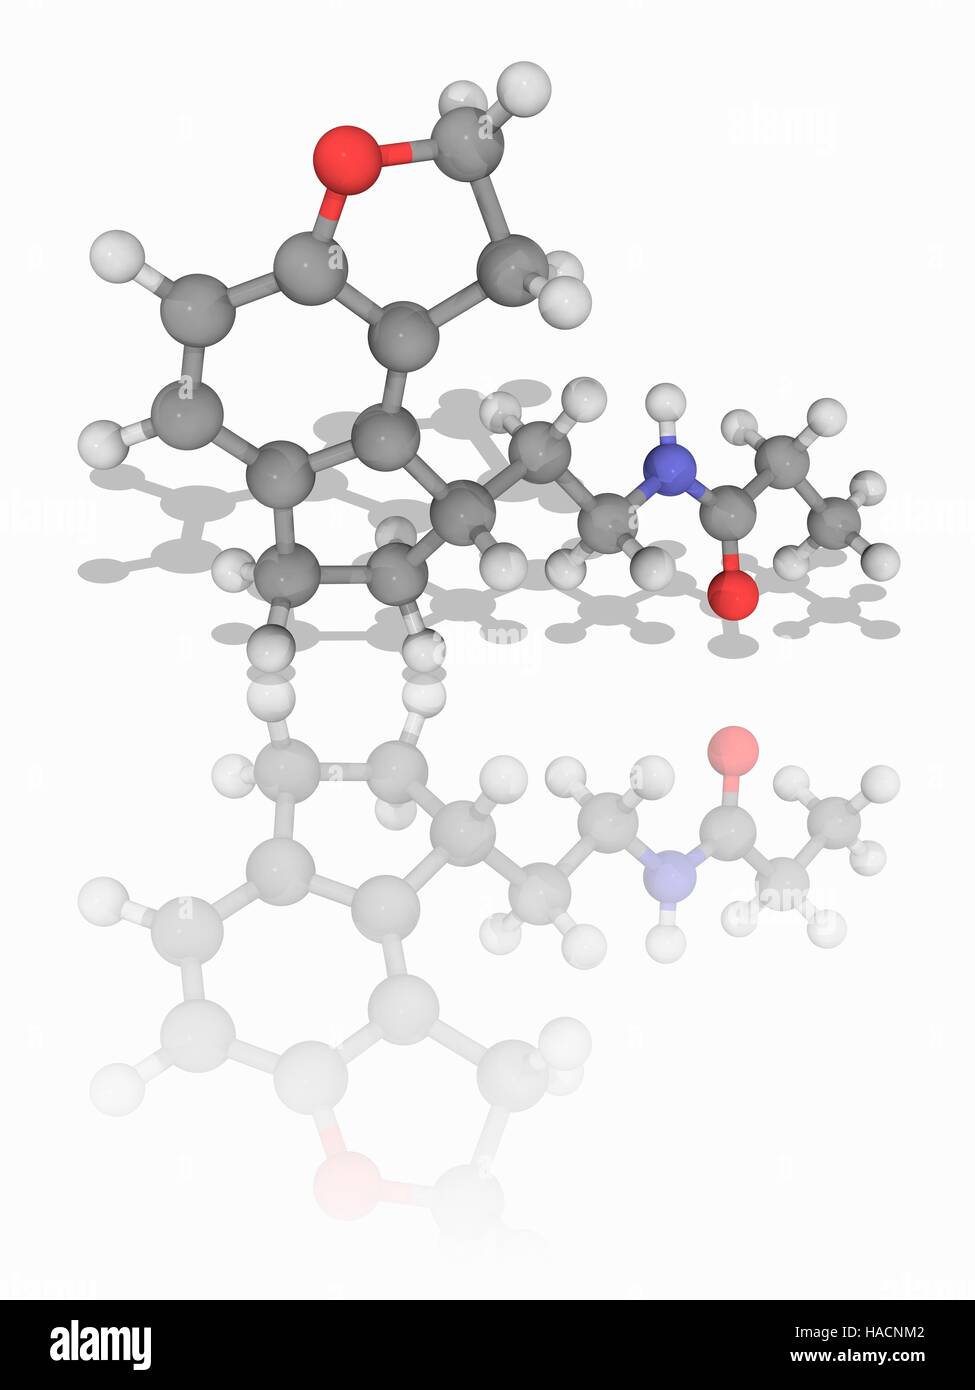 Ramelteon. Molekulares Modell des Medikaments Ramelteon (C16. H21. N.O2), eine Melatonin-Rezeptor-Agonisten und Benzofuran verwendet, um Schlaflosigkeit zu behandeln. Es ist als Rozerem vermarktet. Atome als Kugeln dargestellt werden und sind farblich gekennzeichnet: Kohlenstoff (grau), Wasserstoff (weiß), Stickstoff (blau) und Sauerstoff (rot). Abbildung. Stockfoto